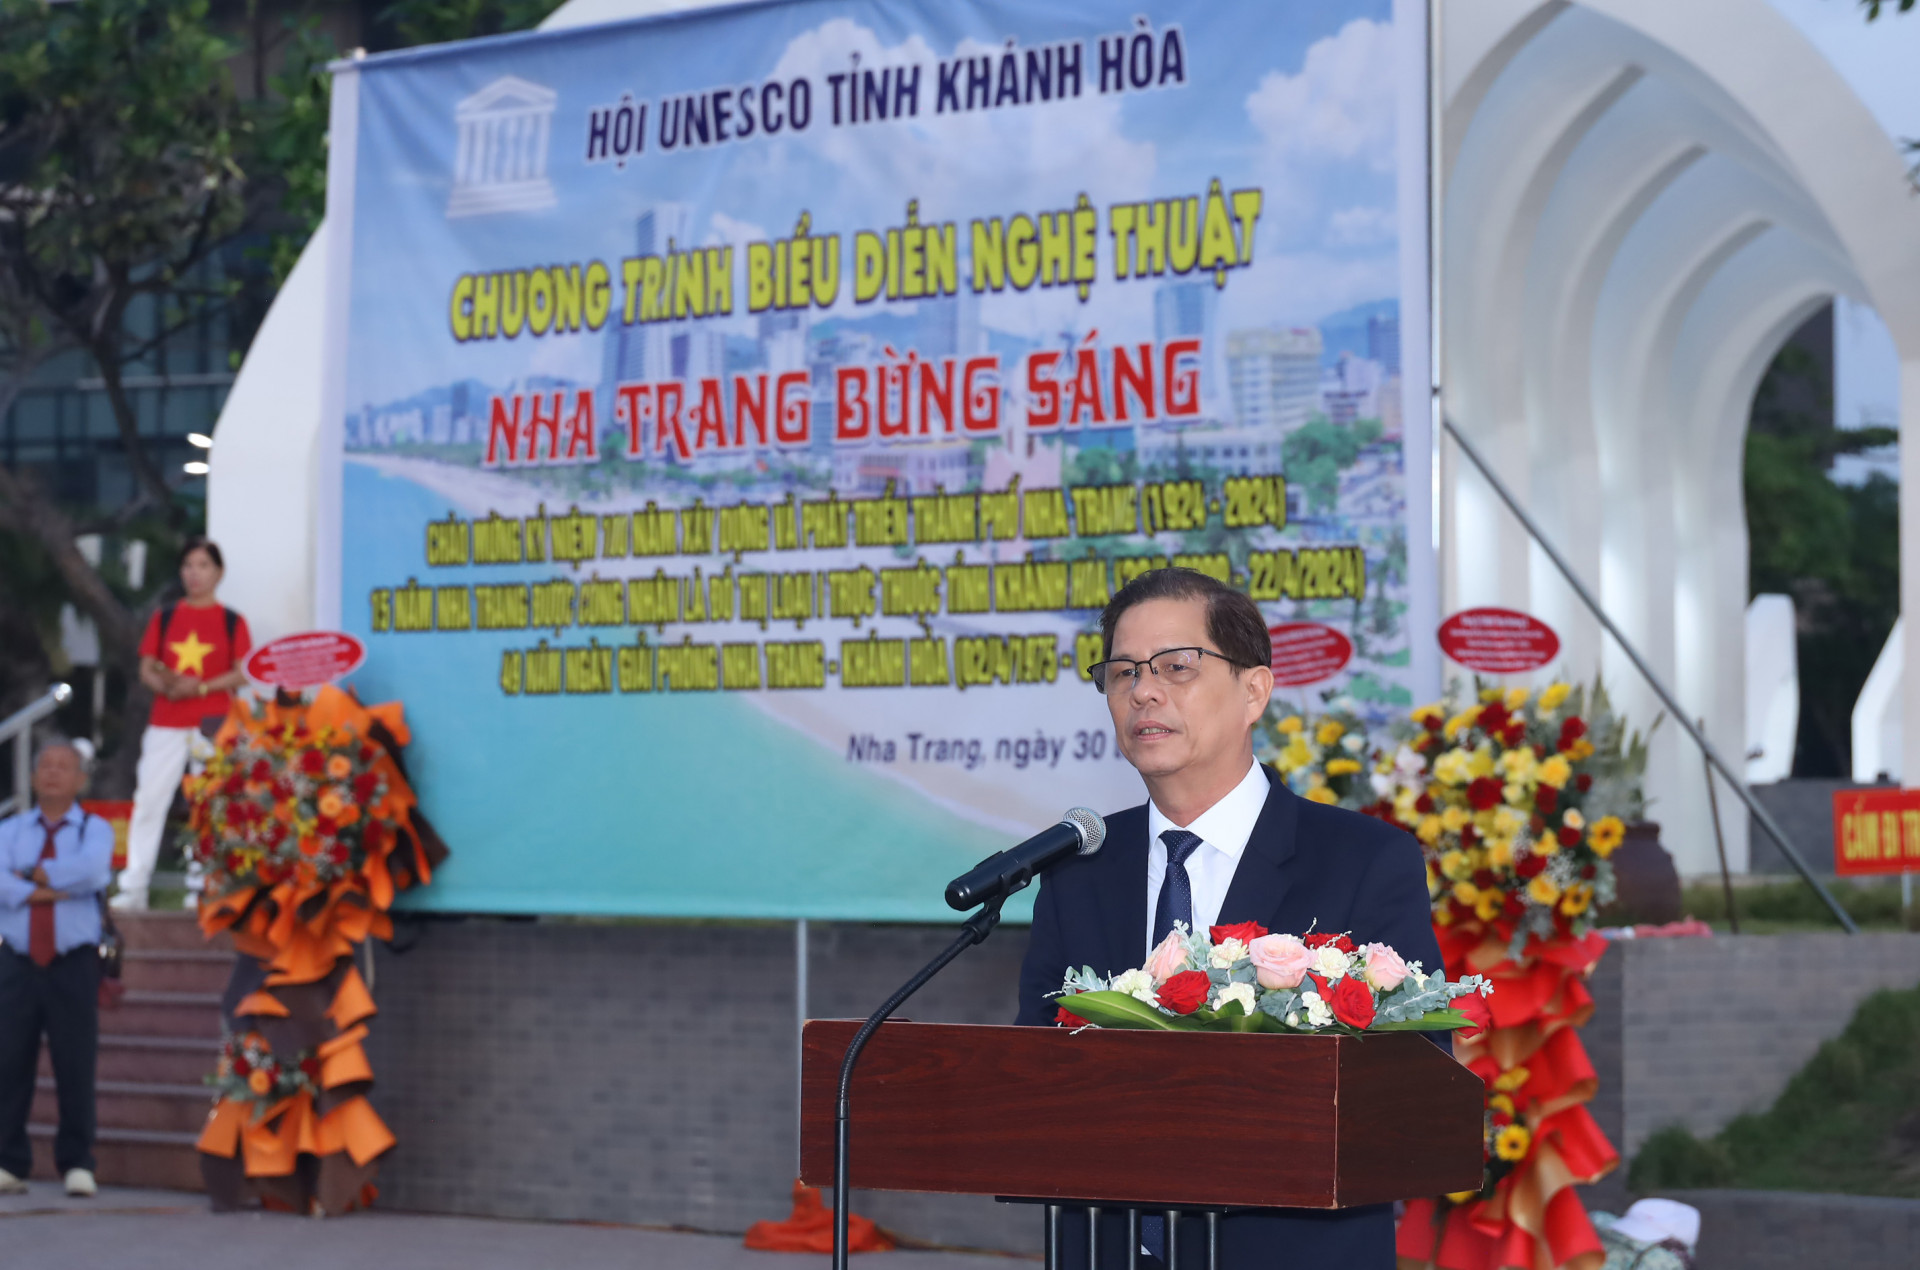 Đồng chí Nguyễn Tấn Tuân phát biểu tại chương trình.